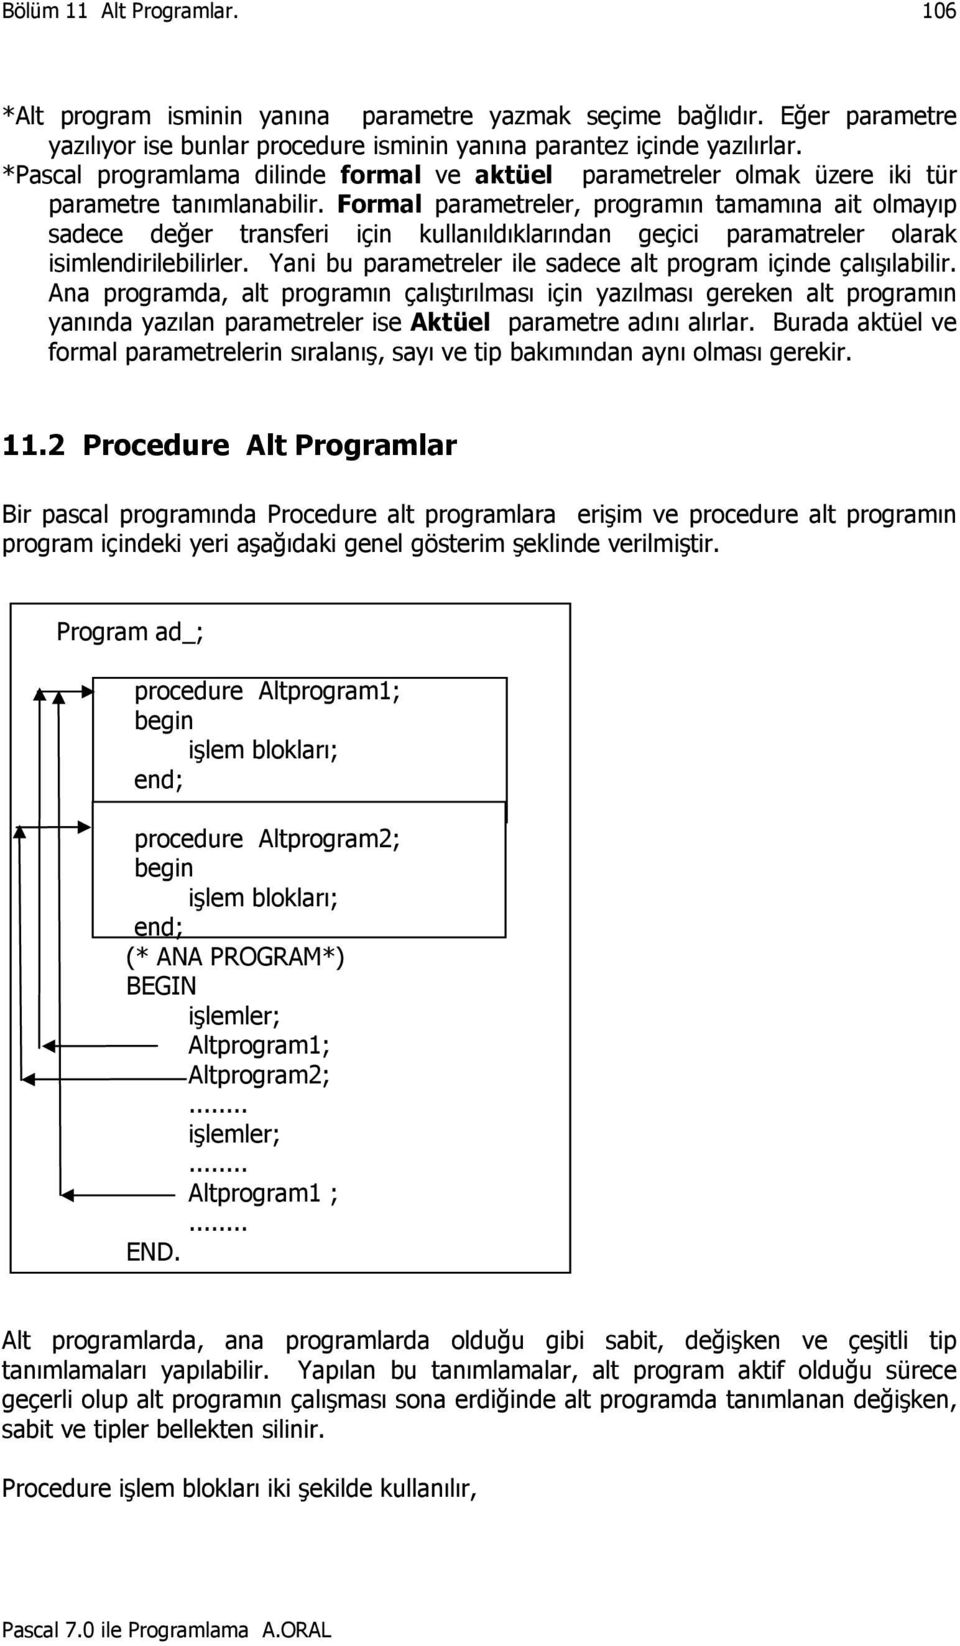 Formal parametreler, programın tamamına ait olmayıp sadece değer transferi için kullanıldıklarından geçici paramatreler olarak isimlendirilebilirler.